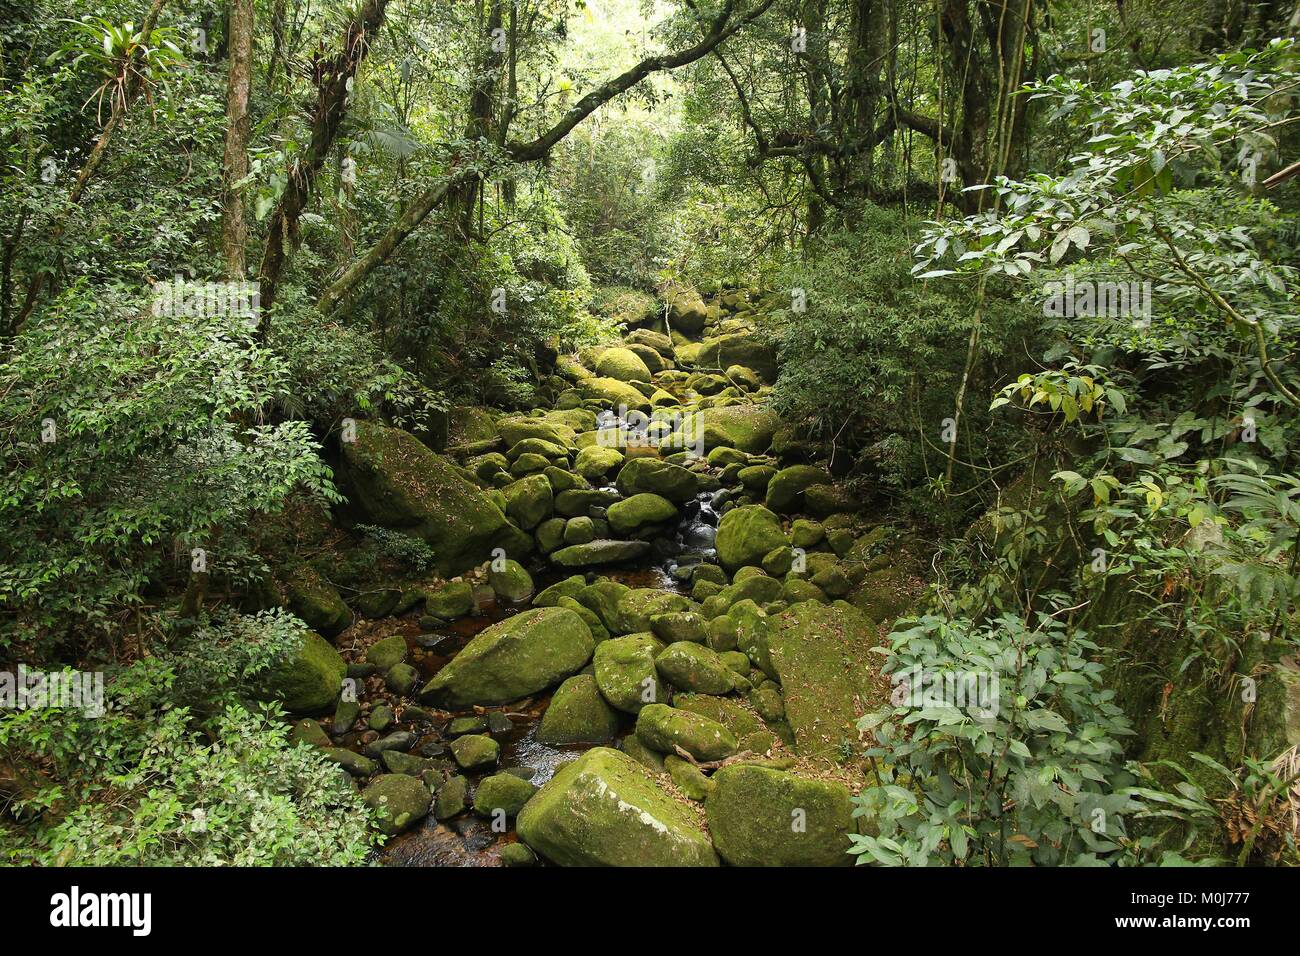 Brasile - giungla vista nella Mata Atlantica (foresta pluviale atlantica ecosistema) nella Serra dos Orgaos National Park (stato di Rio de Janeiro). Foto Stock